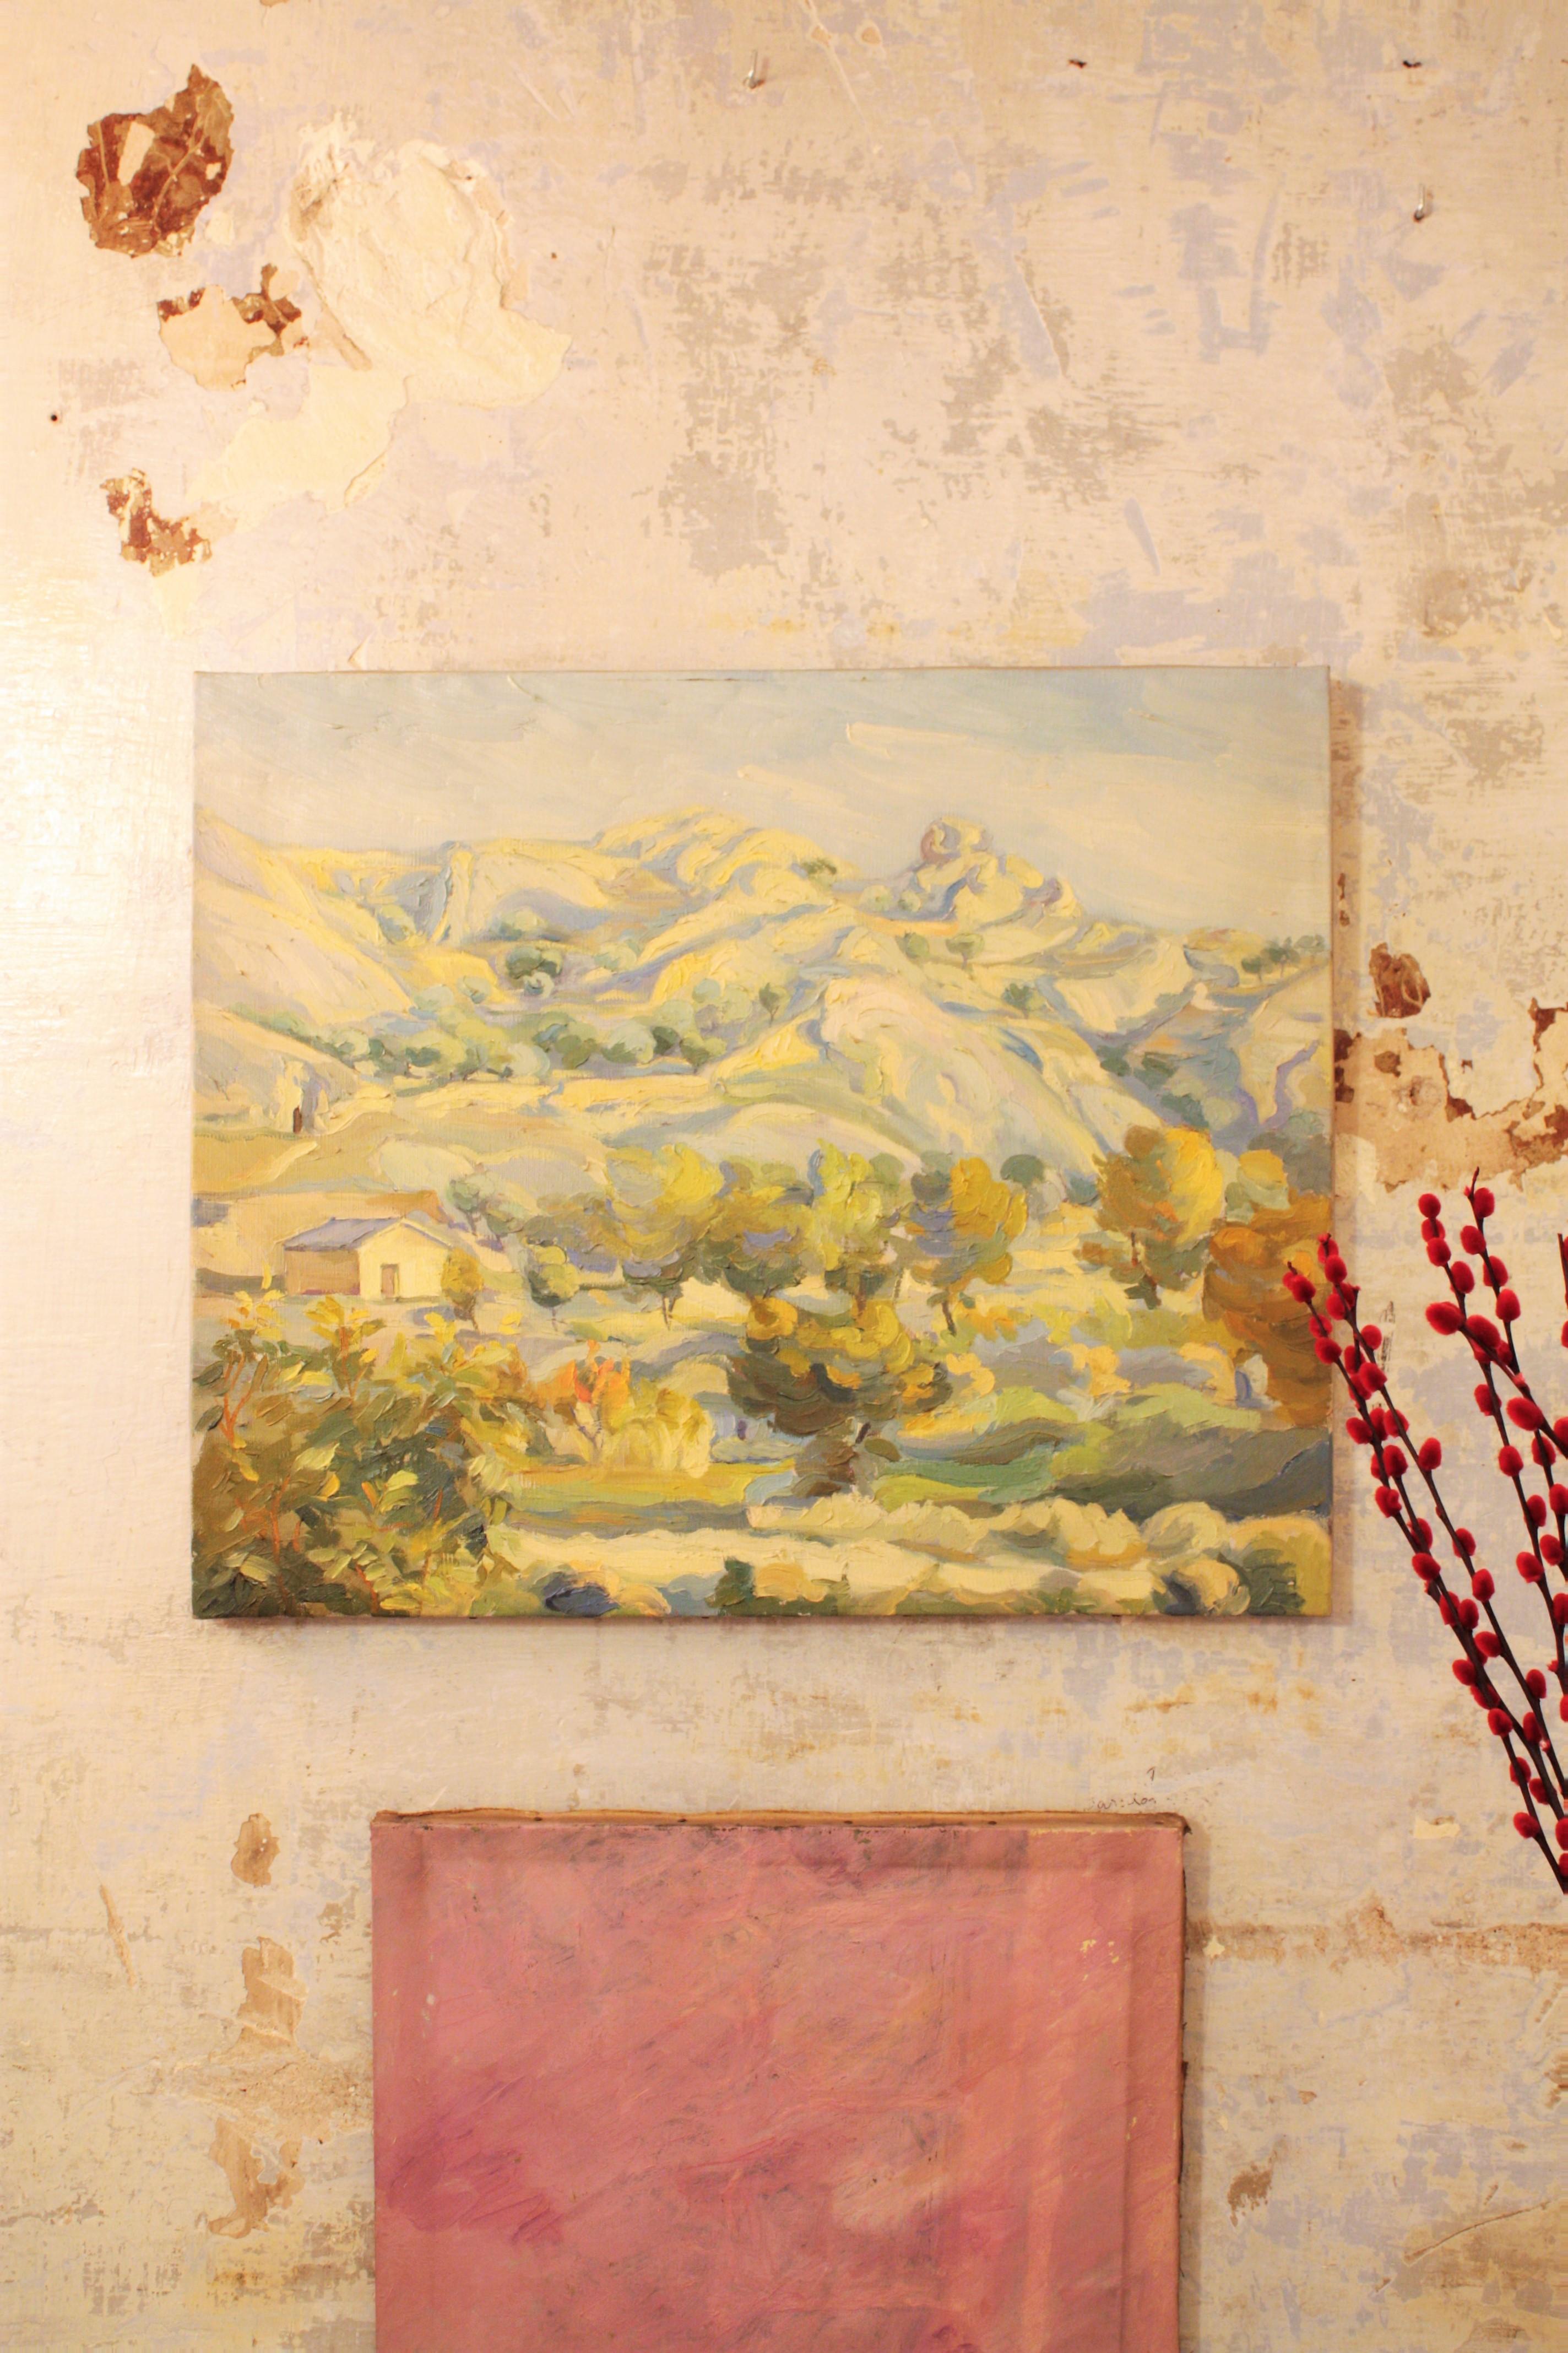 Paysage impressionniste d'une maison de campagne entourée de collines et de forêts. Espagne, 1930-1940.
Cette peinture est fortement texturée dans des tons de vert et de bleu avec des accents de blanc. La peinture de cette pièce est épaisse et